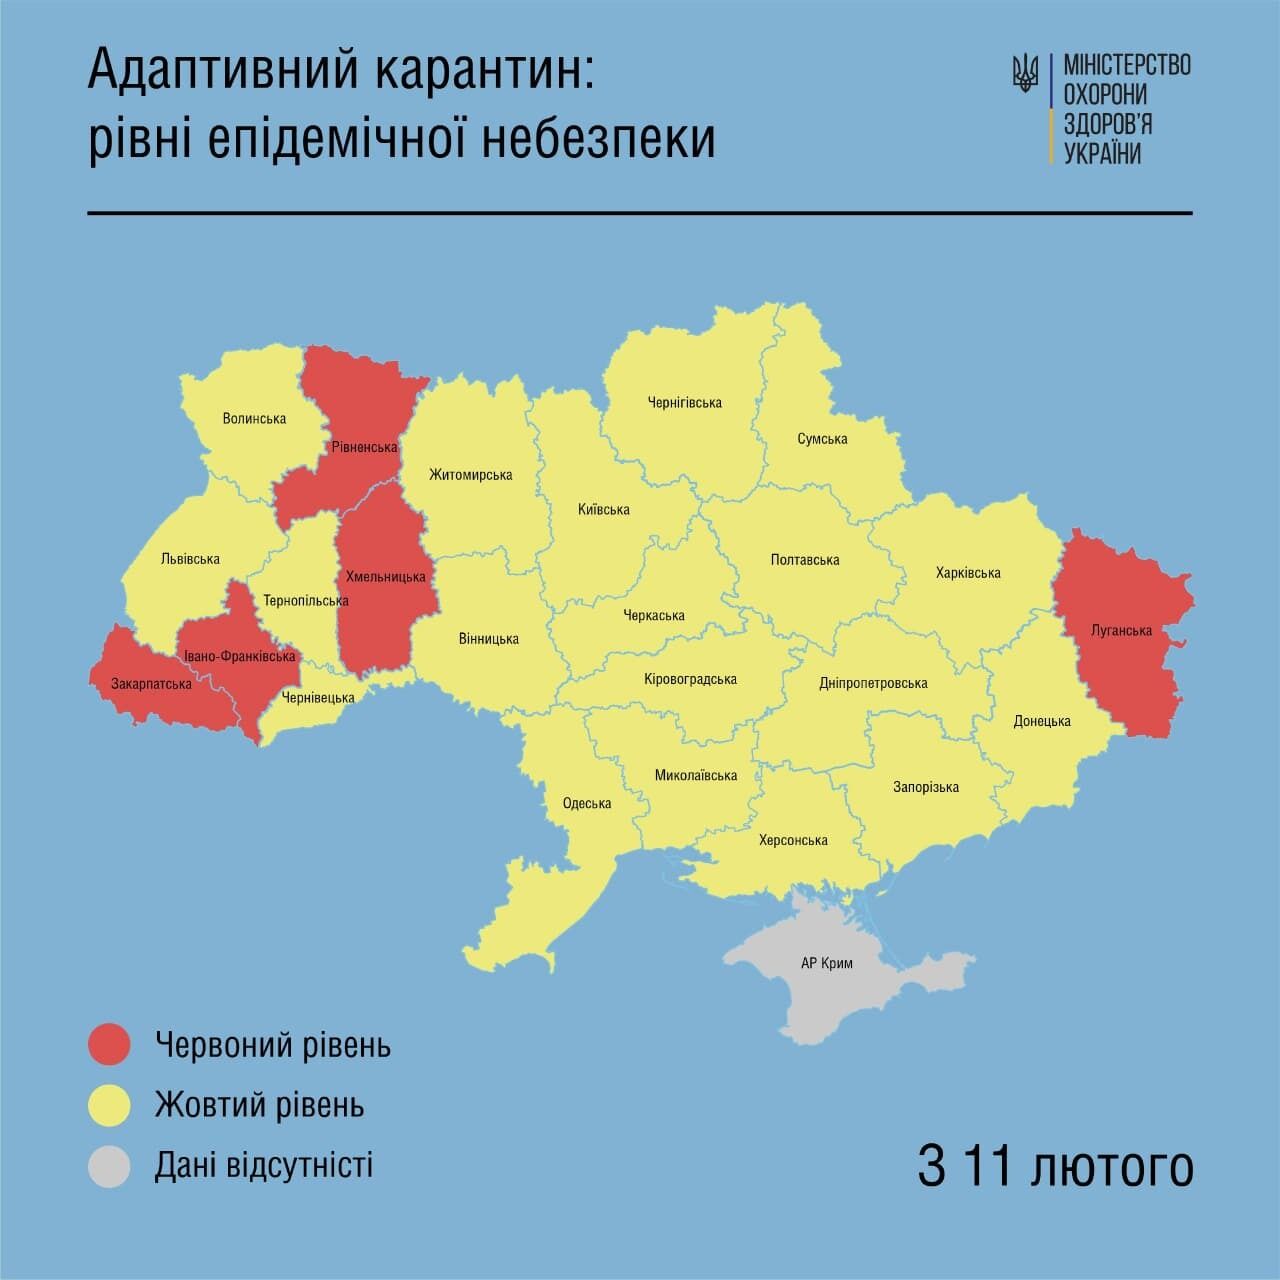 Карта карантинных зон в Украине.